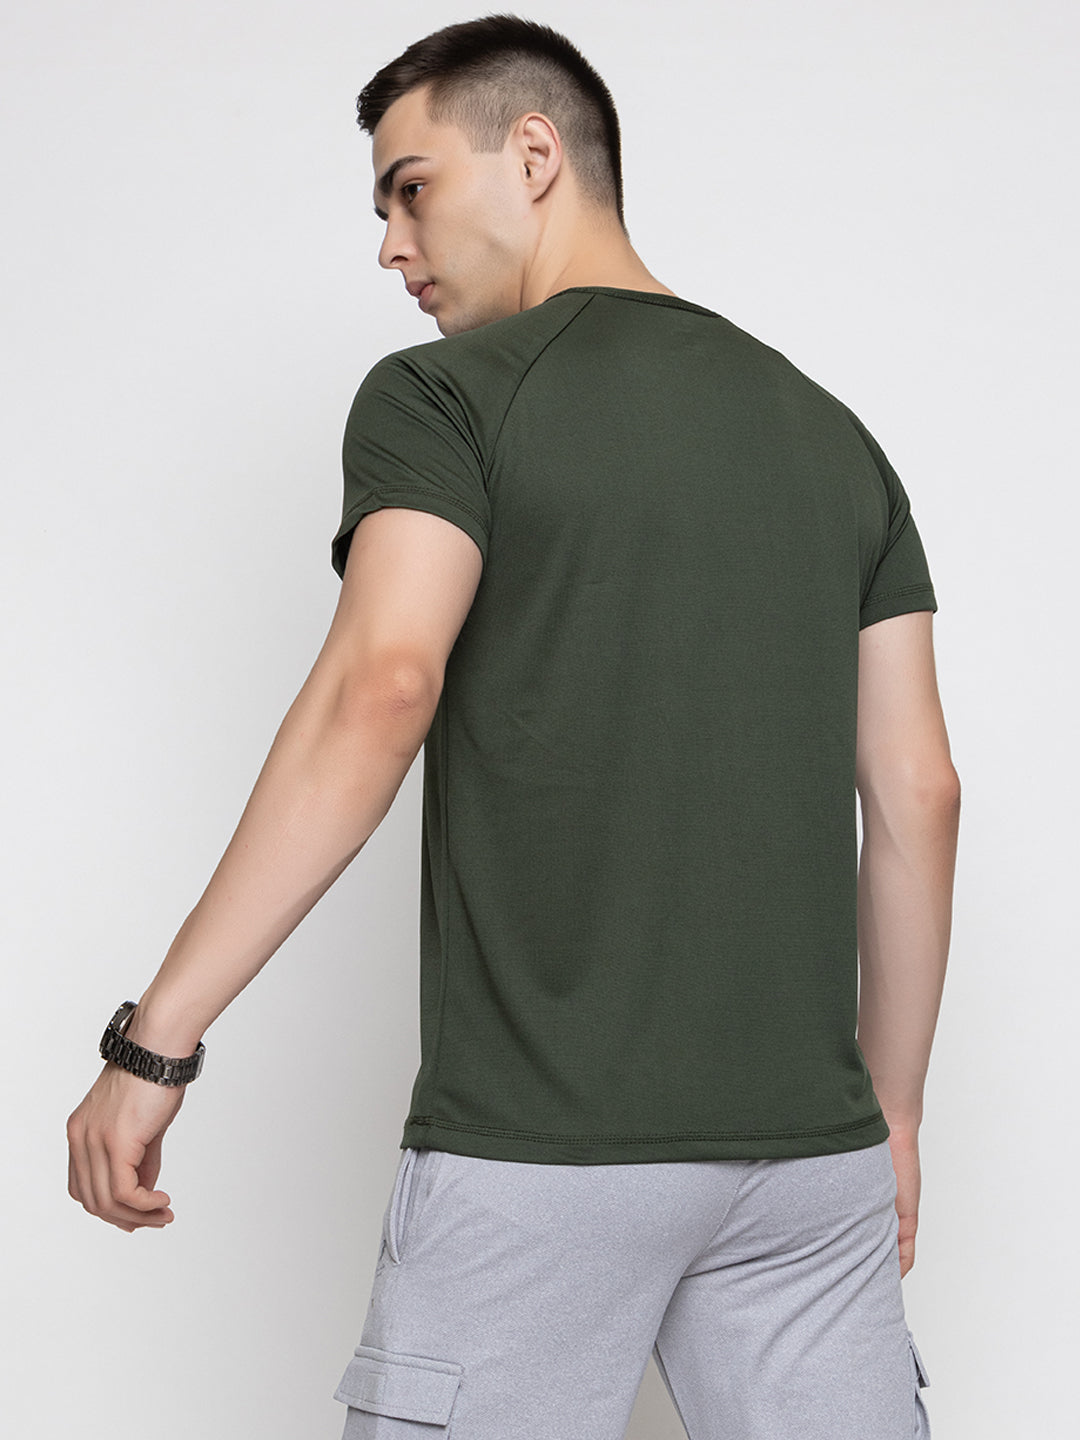 120 Camo Textured Dri-Fit Sports Tshirt I Olive